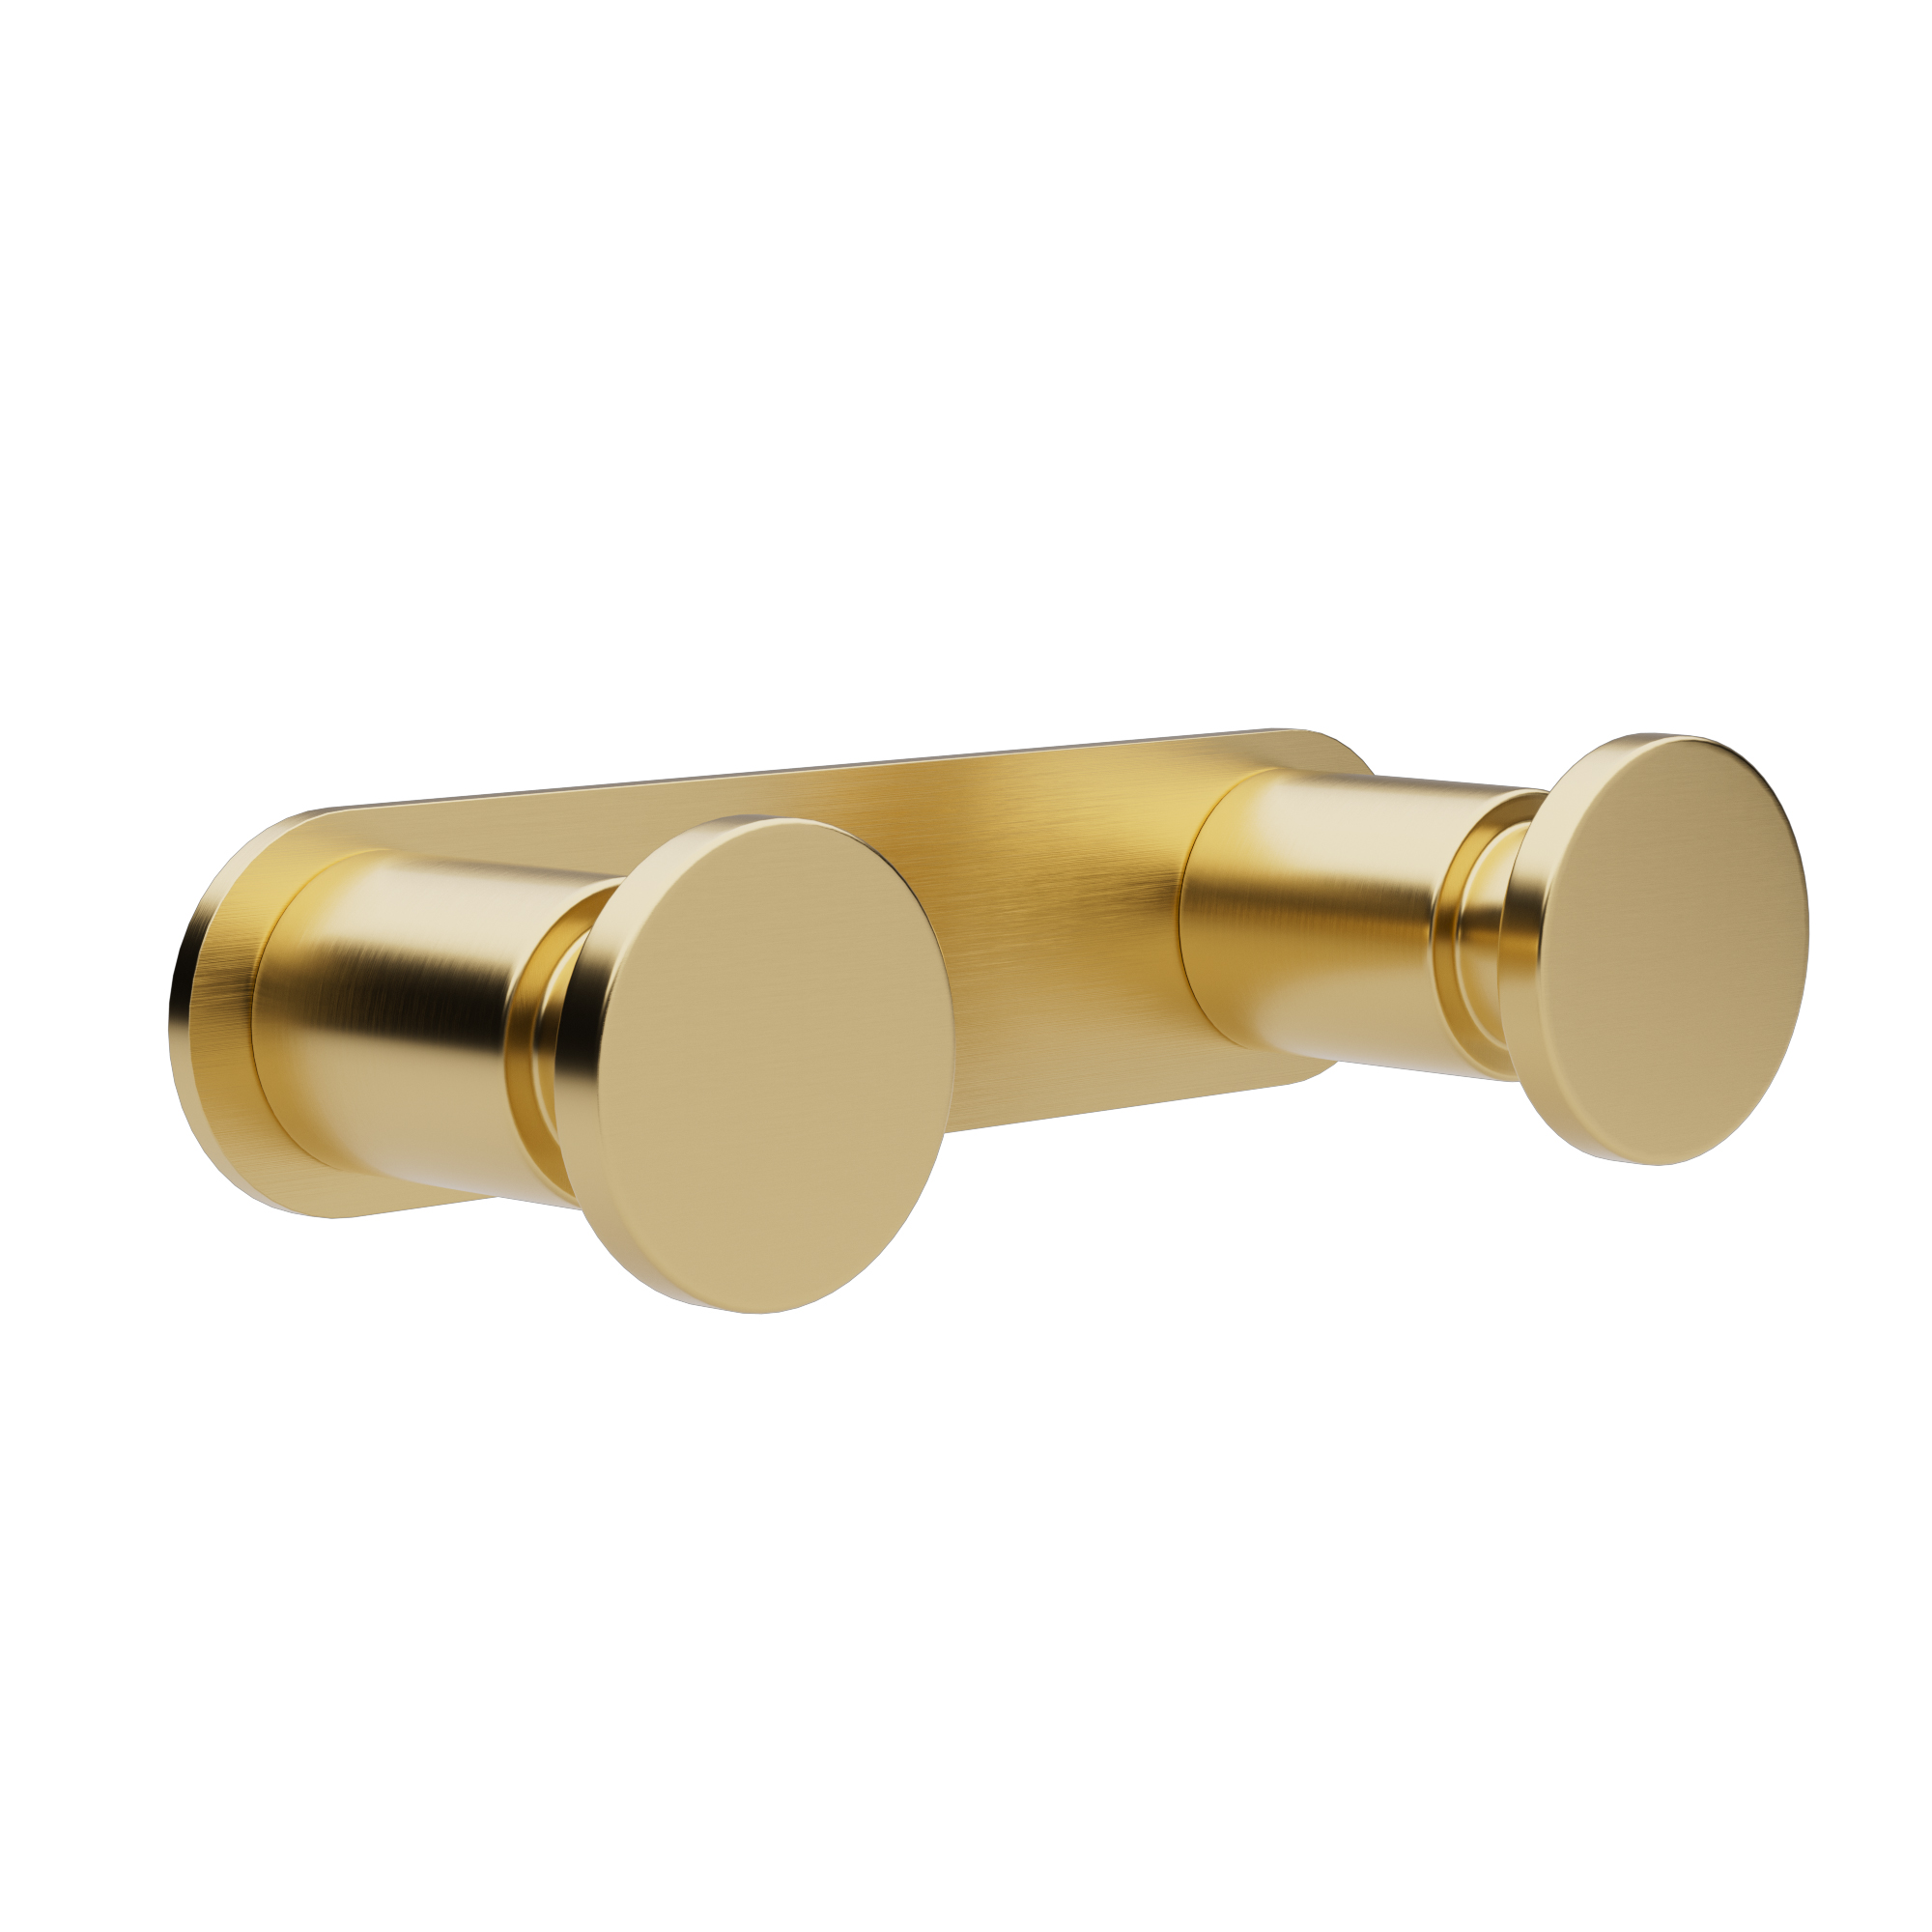 Κρεμάστρα Τοίχου 2 Θέσεων Ανοξείδωτη Brushed Brass Pam & Co 12×3,5×2,5εκ. 70-023 (Υλικό: Ανοξείδωτο) – Pam & Co – 70-023